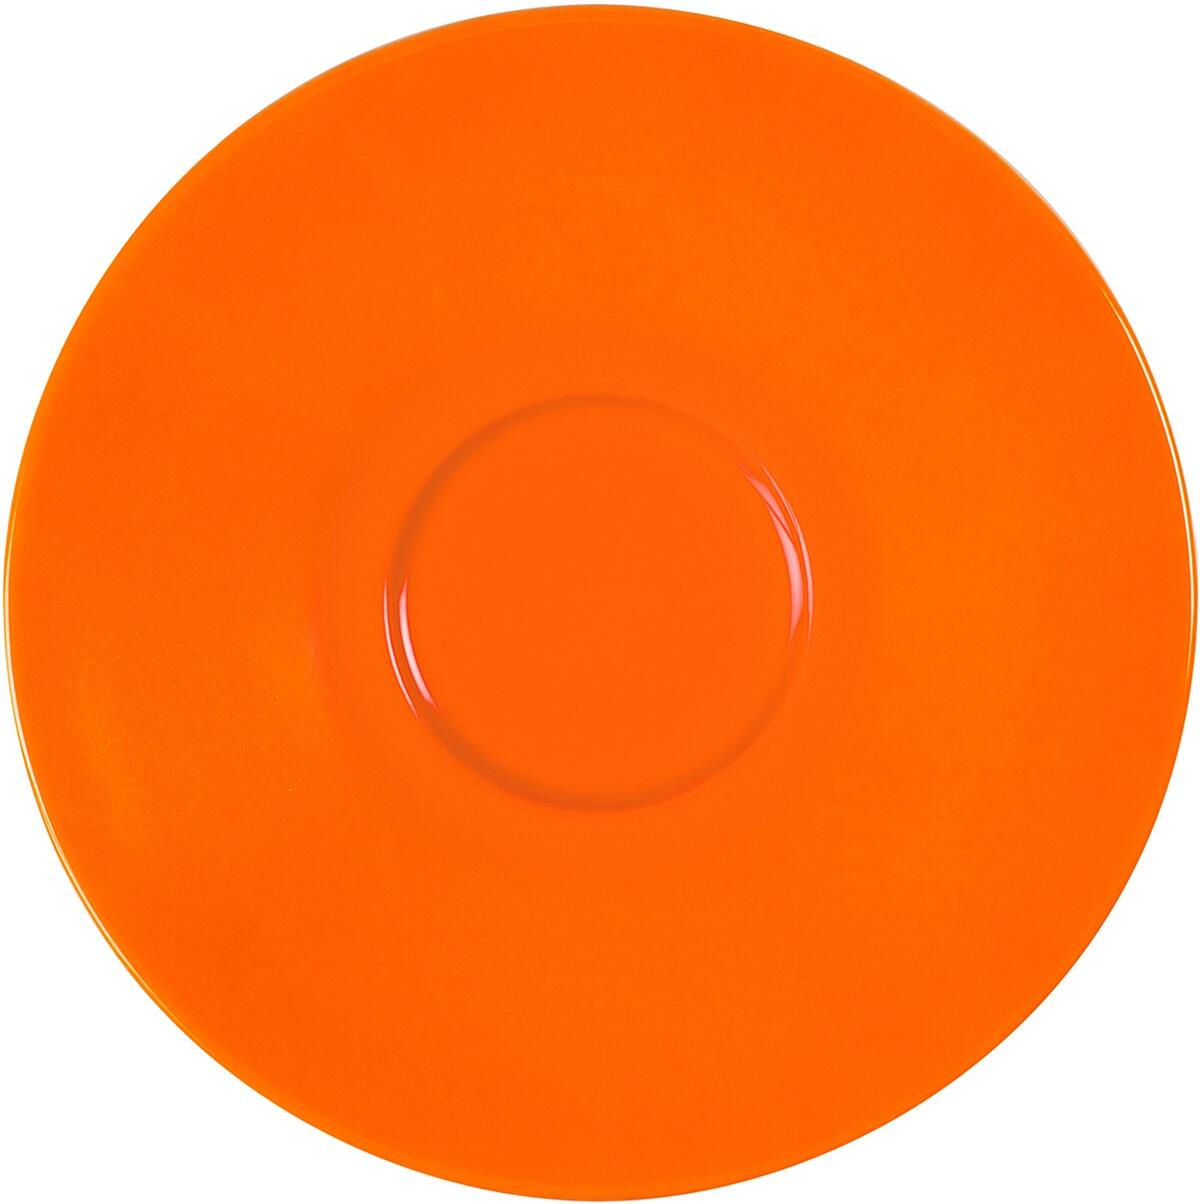 Eschenbach Porzellan Untertasse 16 cm in orange